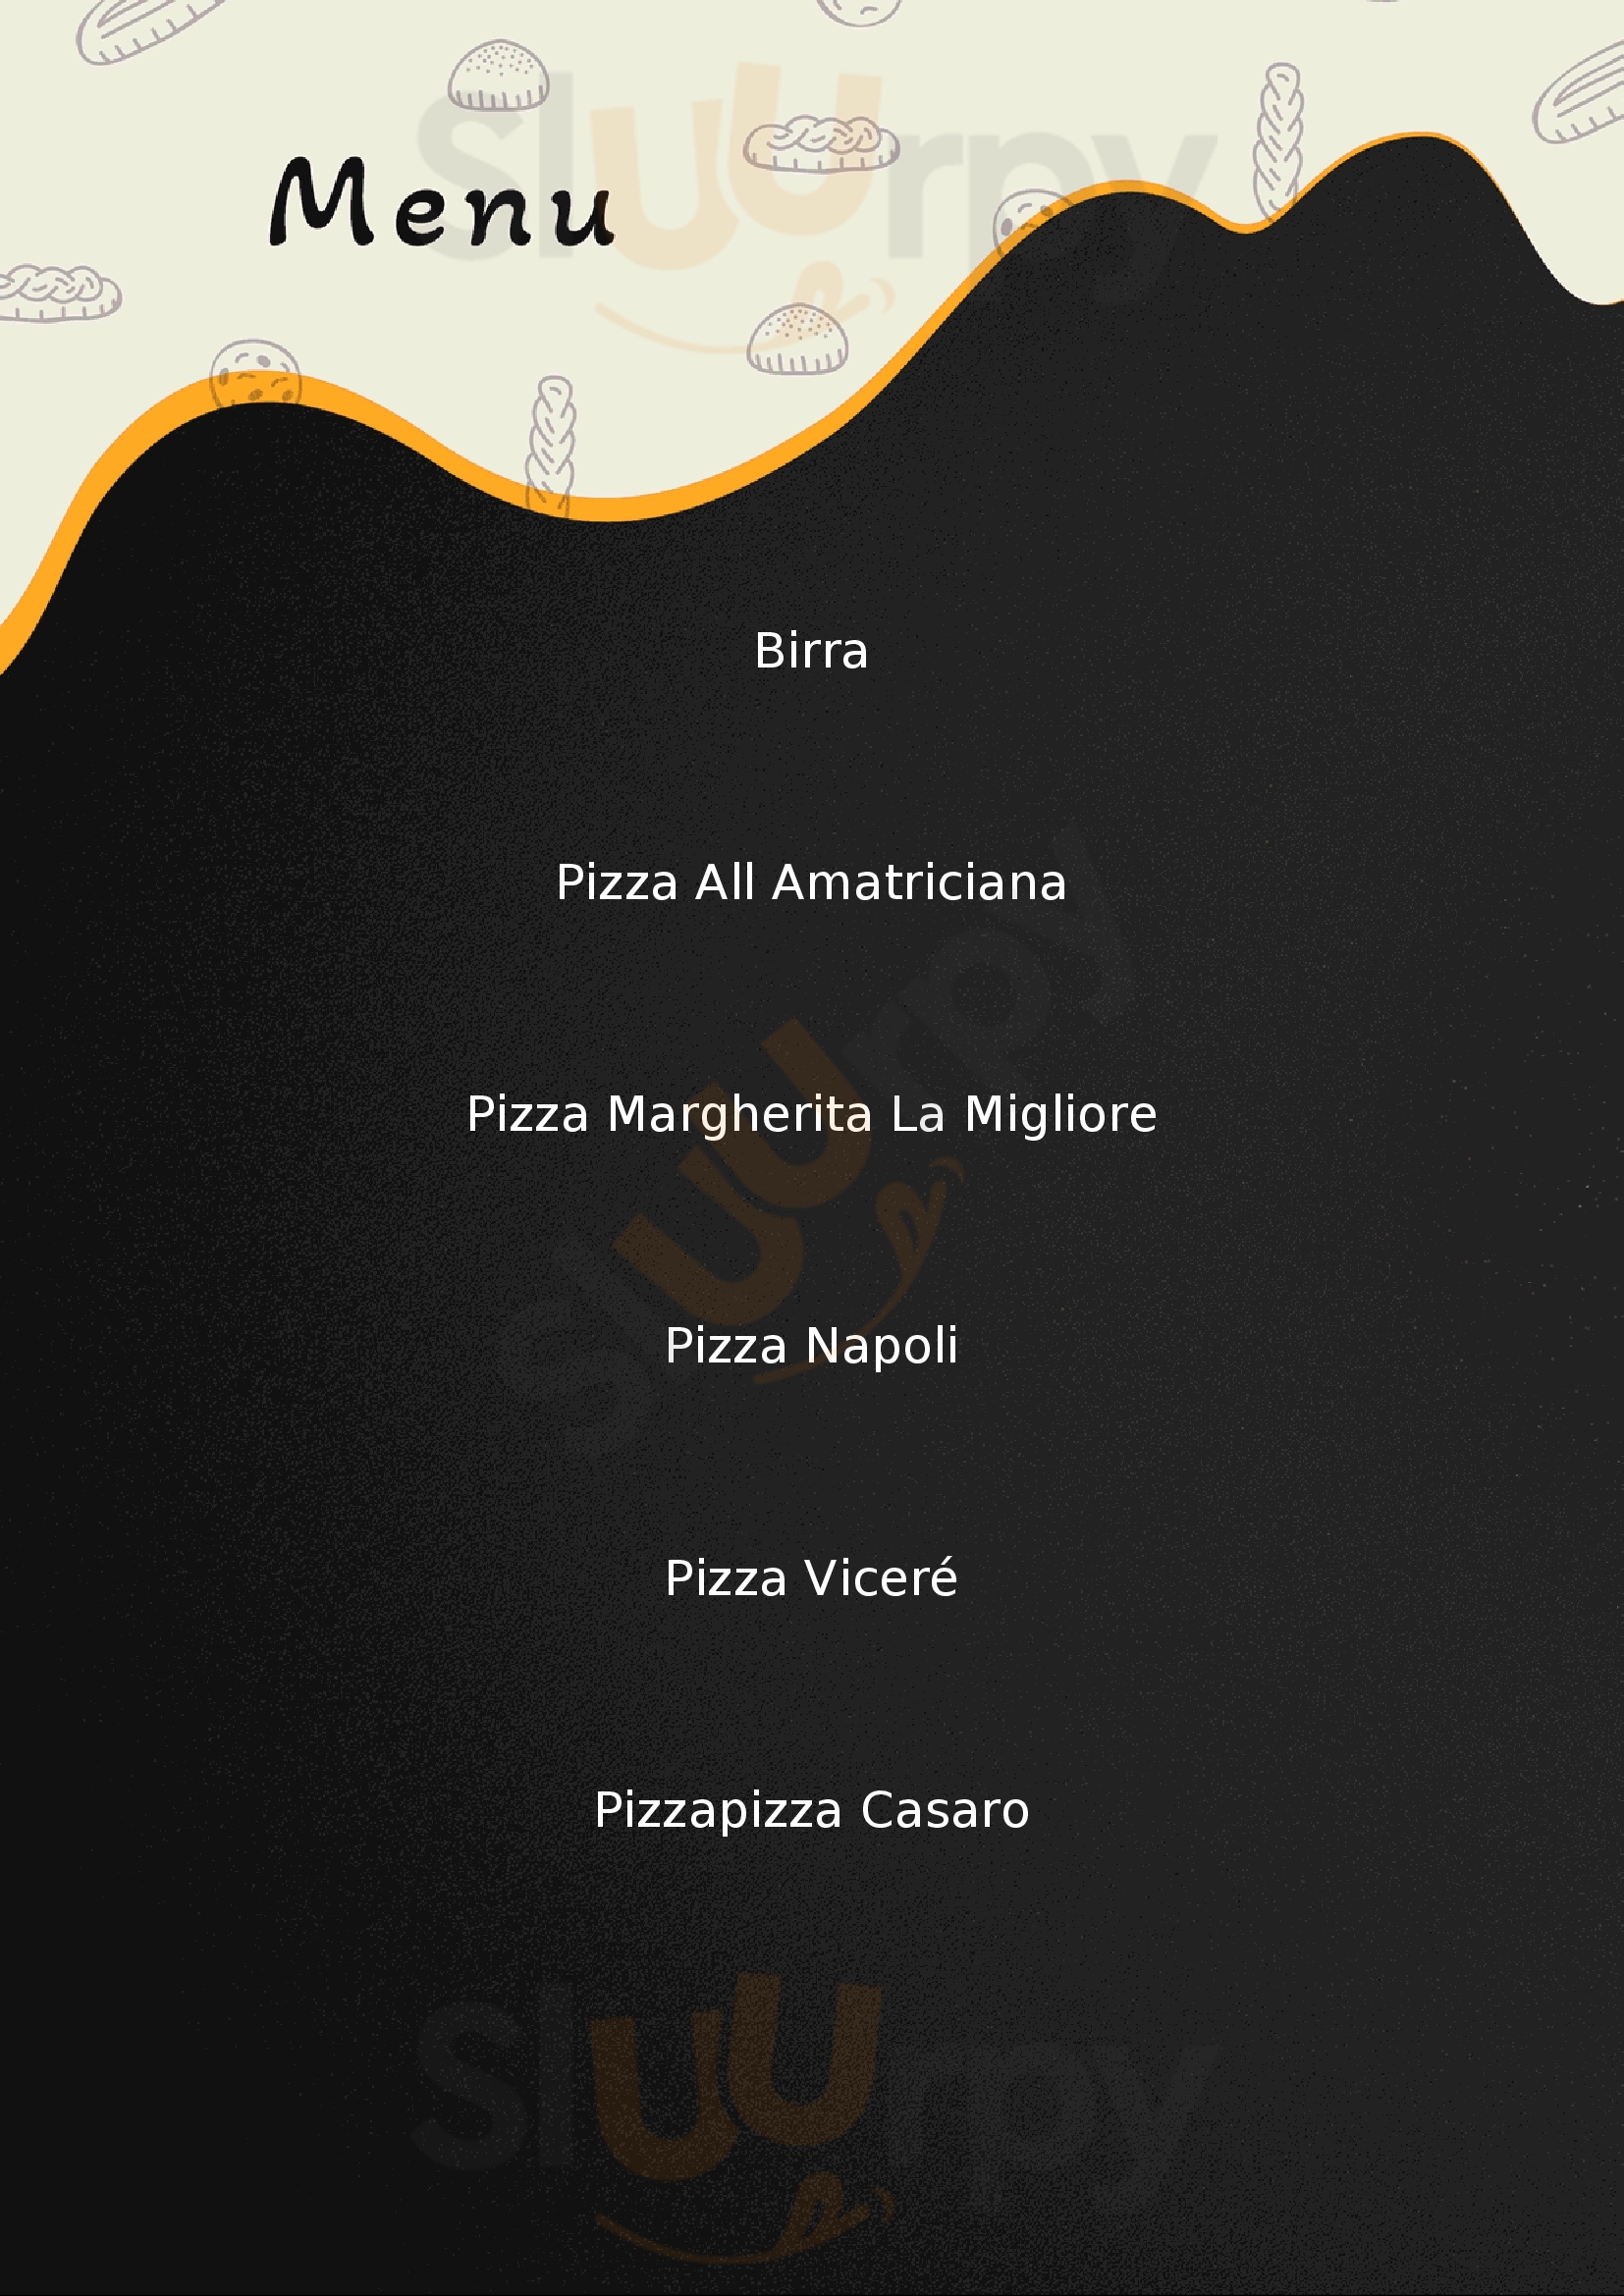 Pizzeria Basilico e Mozzarella Erba menù 1 pagina